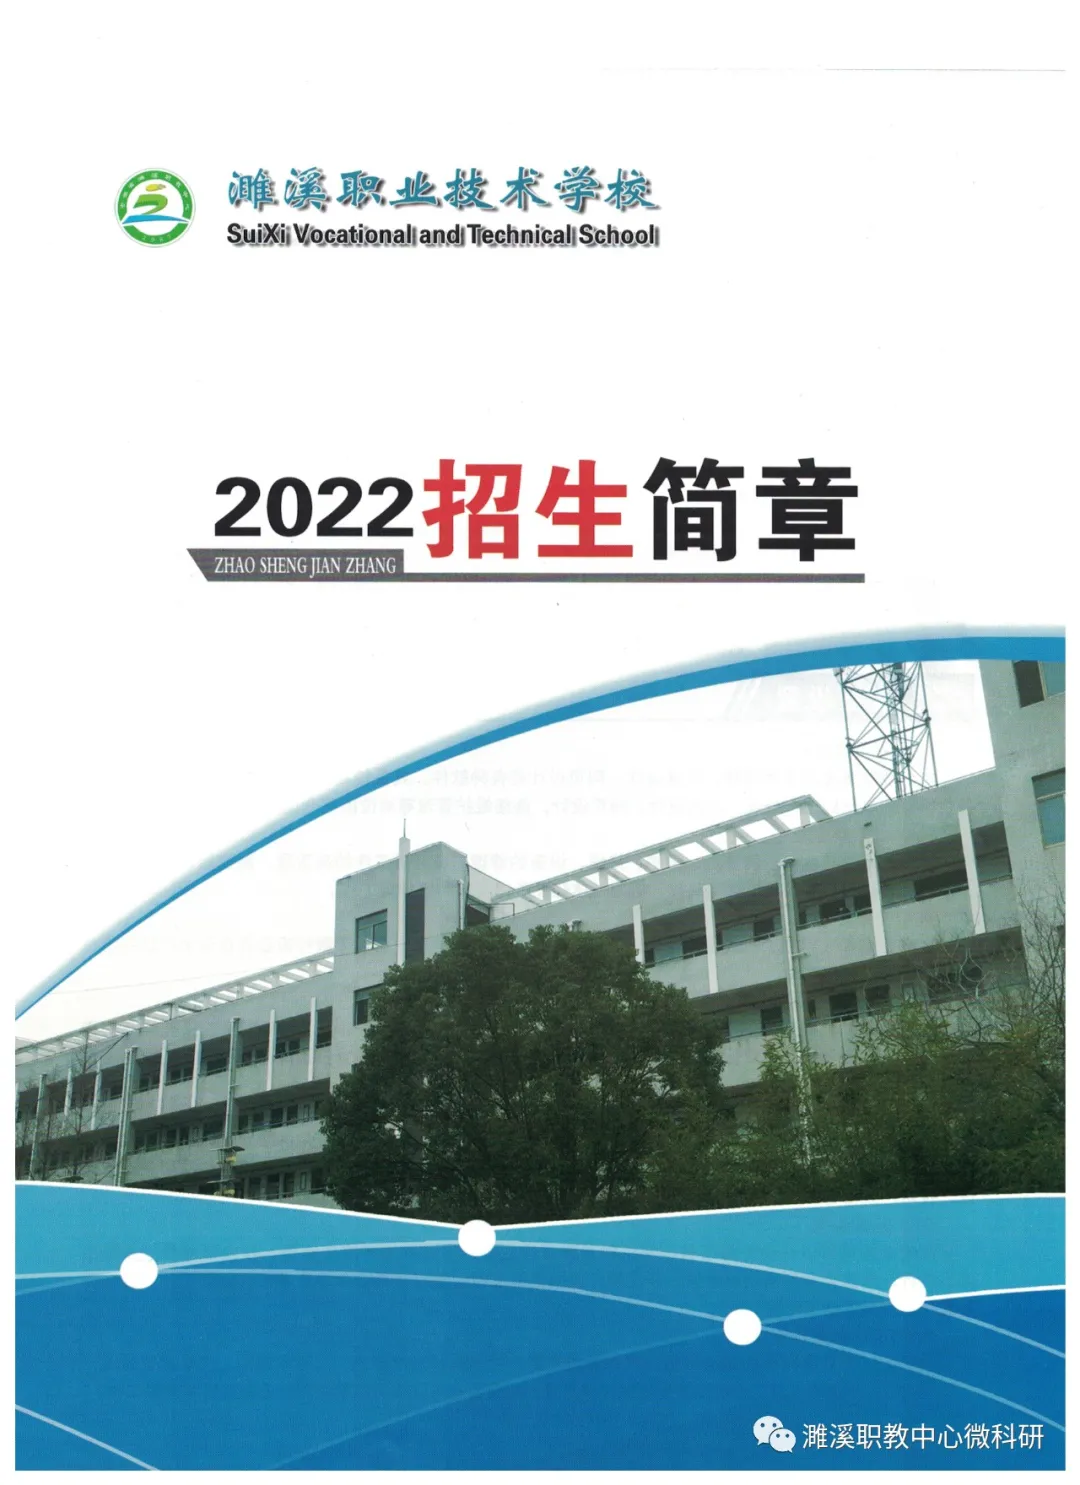 濉溪职业技术学校（安徽省濉溪县职业教育中心）2022年招生简章